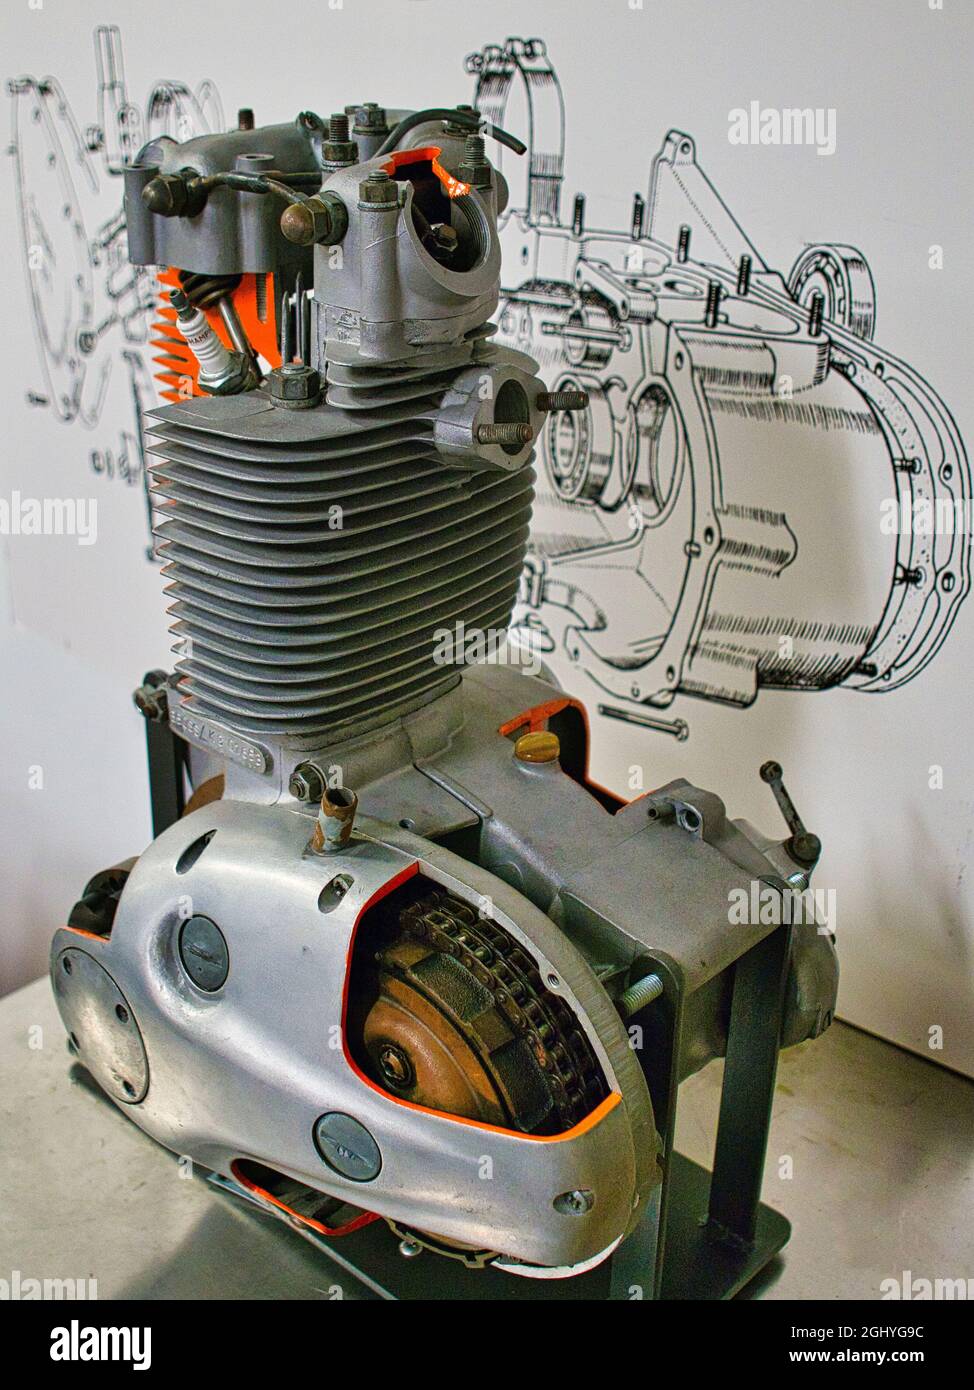 découpez le détail d'un moteur de moto avec un dessin de ligne im arrière-plan Banque D'Images